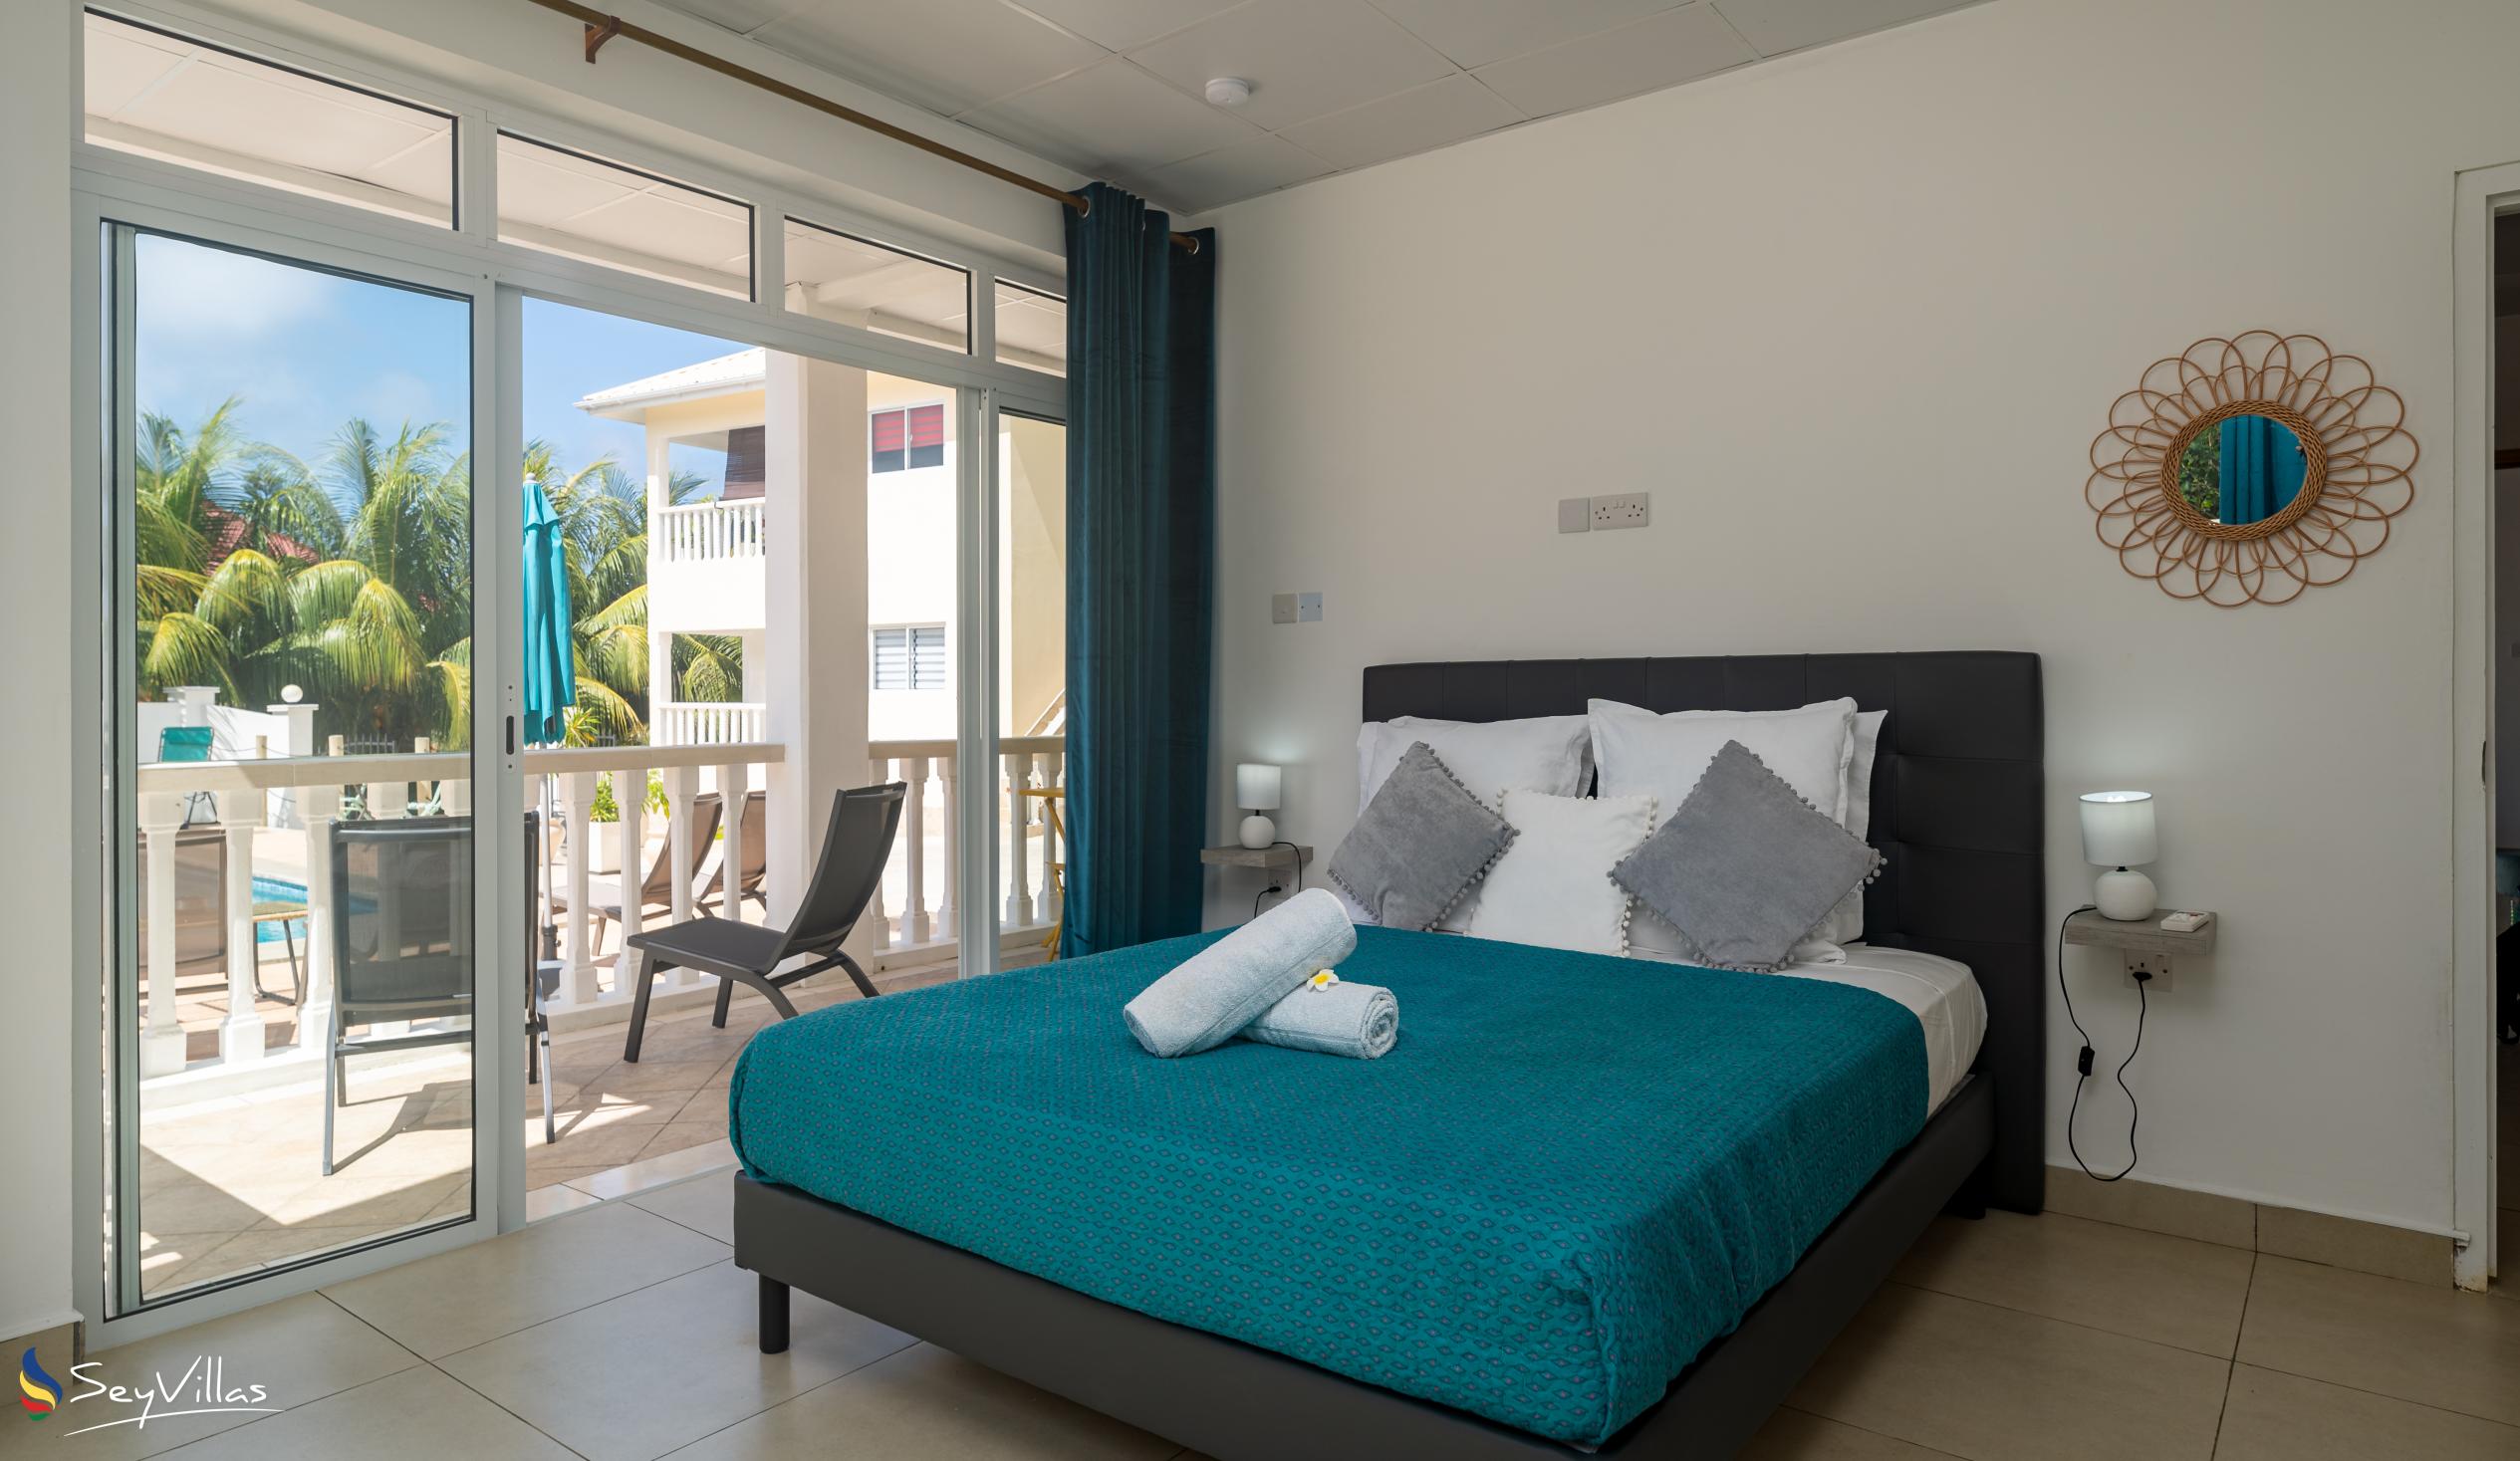 Photo 80: Cap Confort - 1-Bedroom Apartment - Mahé (Seychelles)